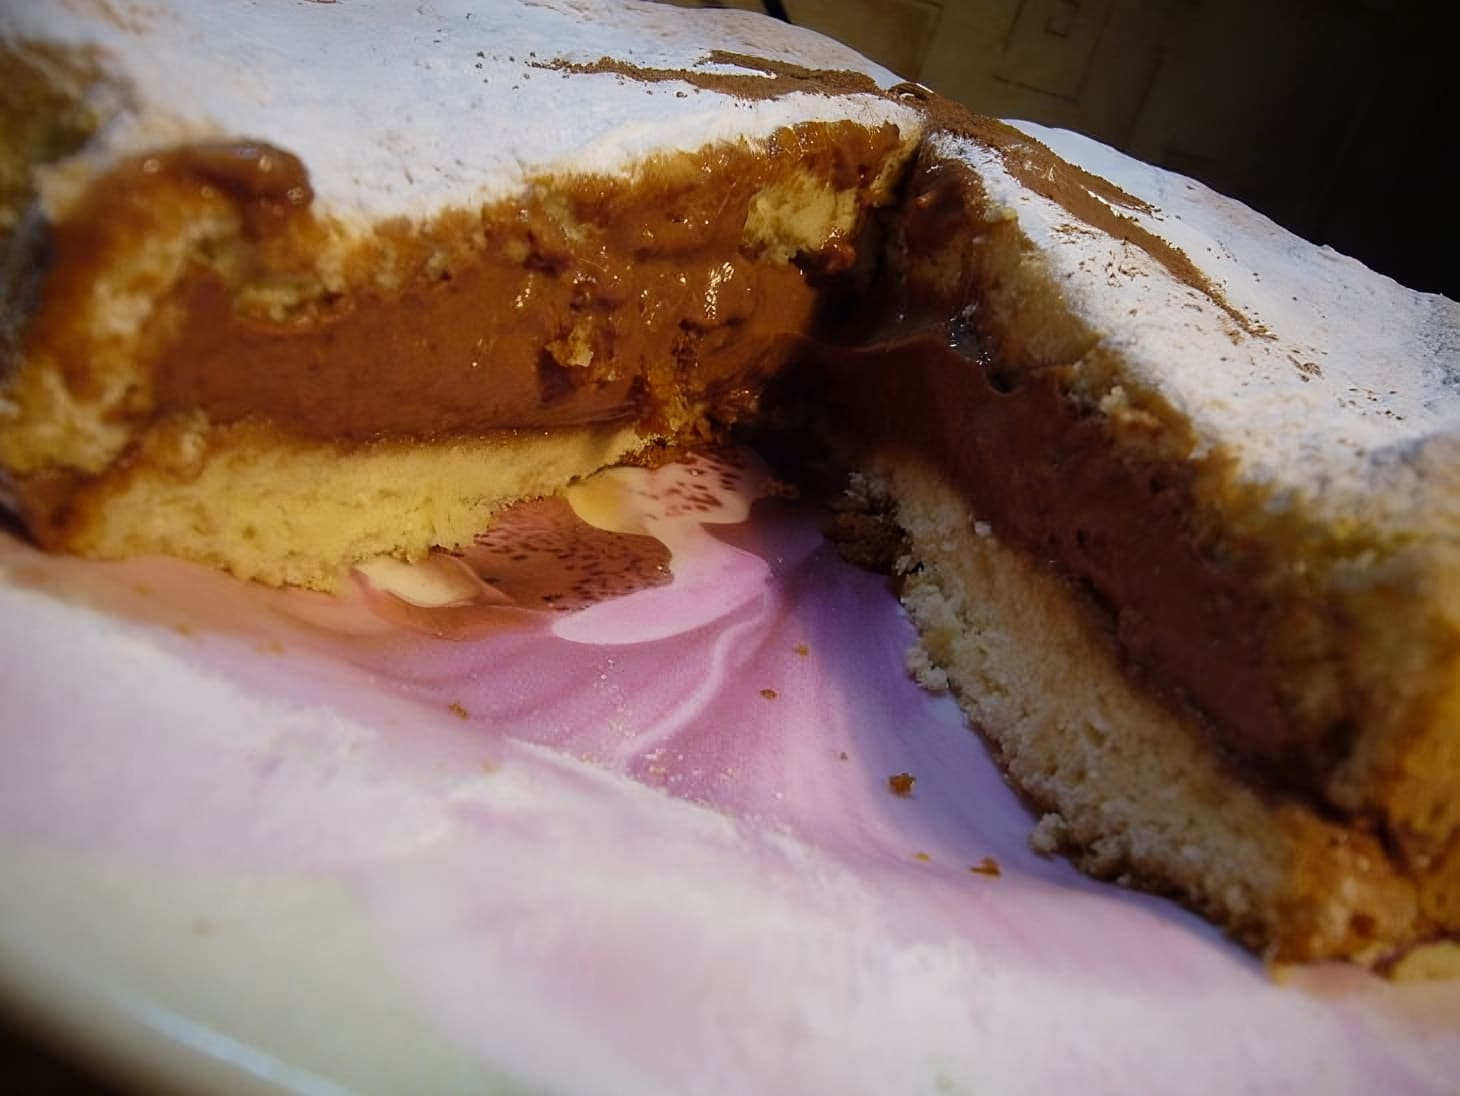 Italian Rigo Janschi cake